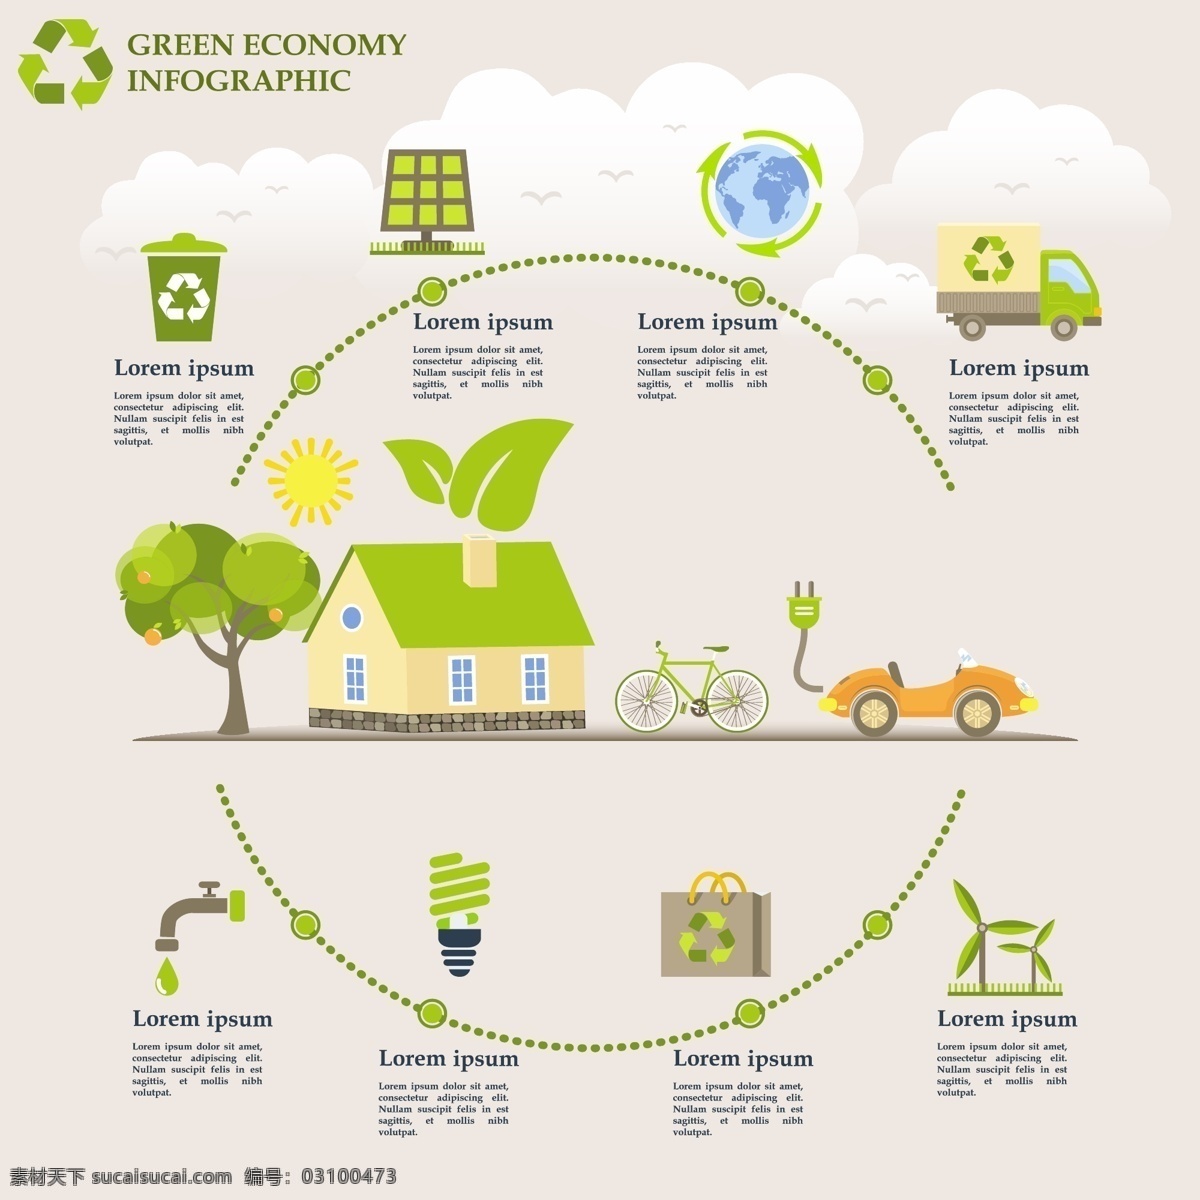 生态信息图表 环保 创意设计 eco 绿色 循环 能源 节能 低碳 生态 回收 环保标志 ppt素材 底纹背景 矢量 底纹边框 背景底纹